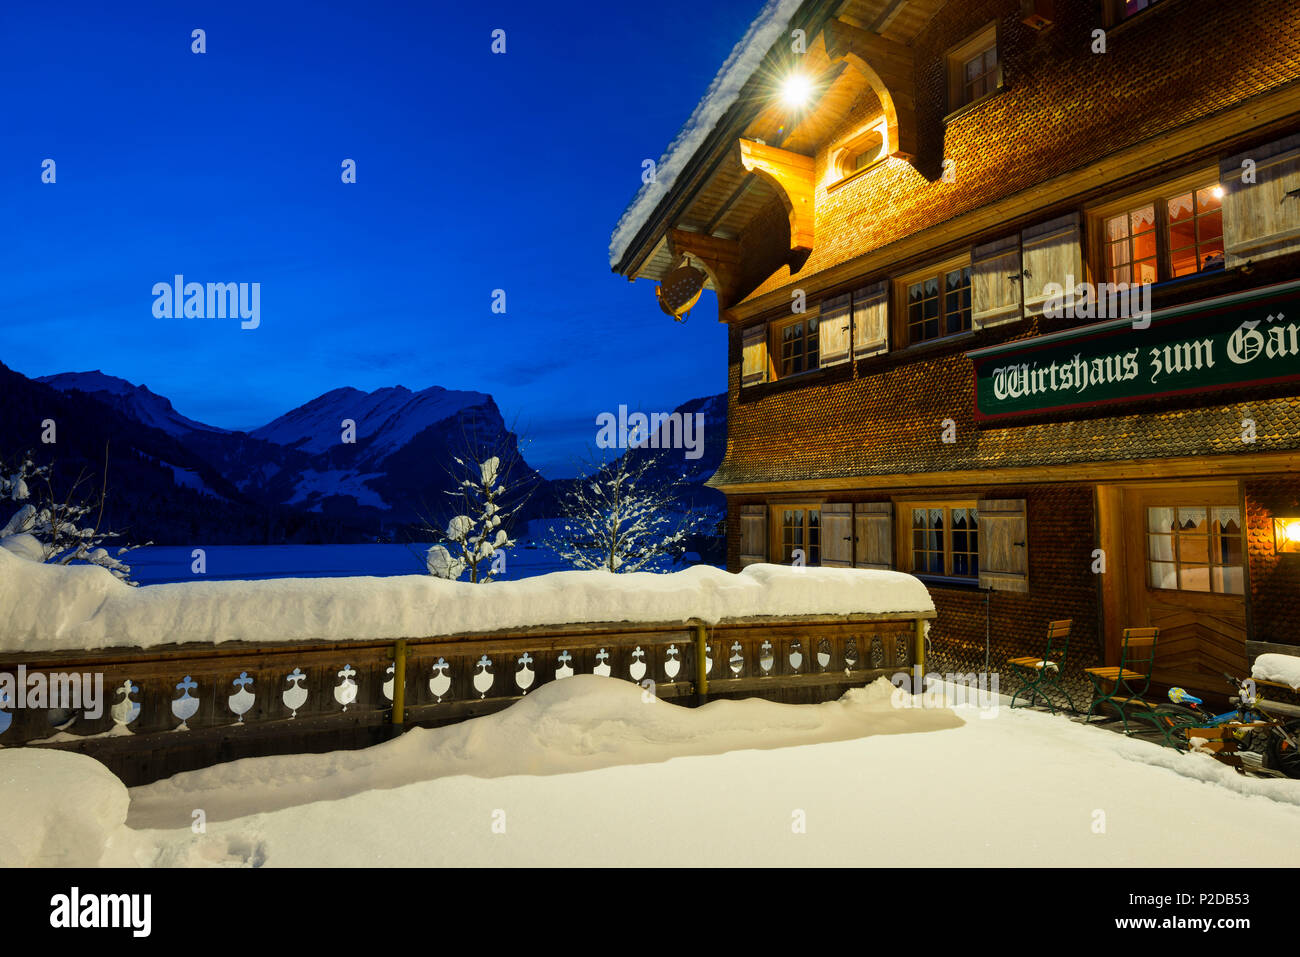 snow covered tavern at night, Schoppernau, Bregenz district, Vorarlberg, Austria Stock Photo